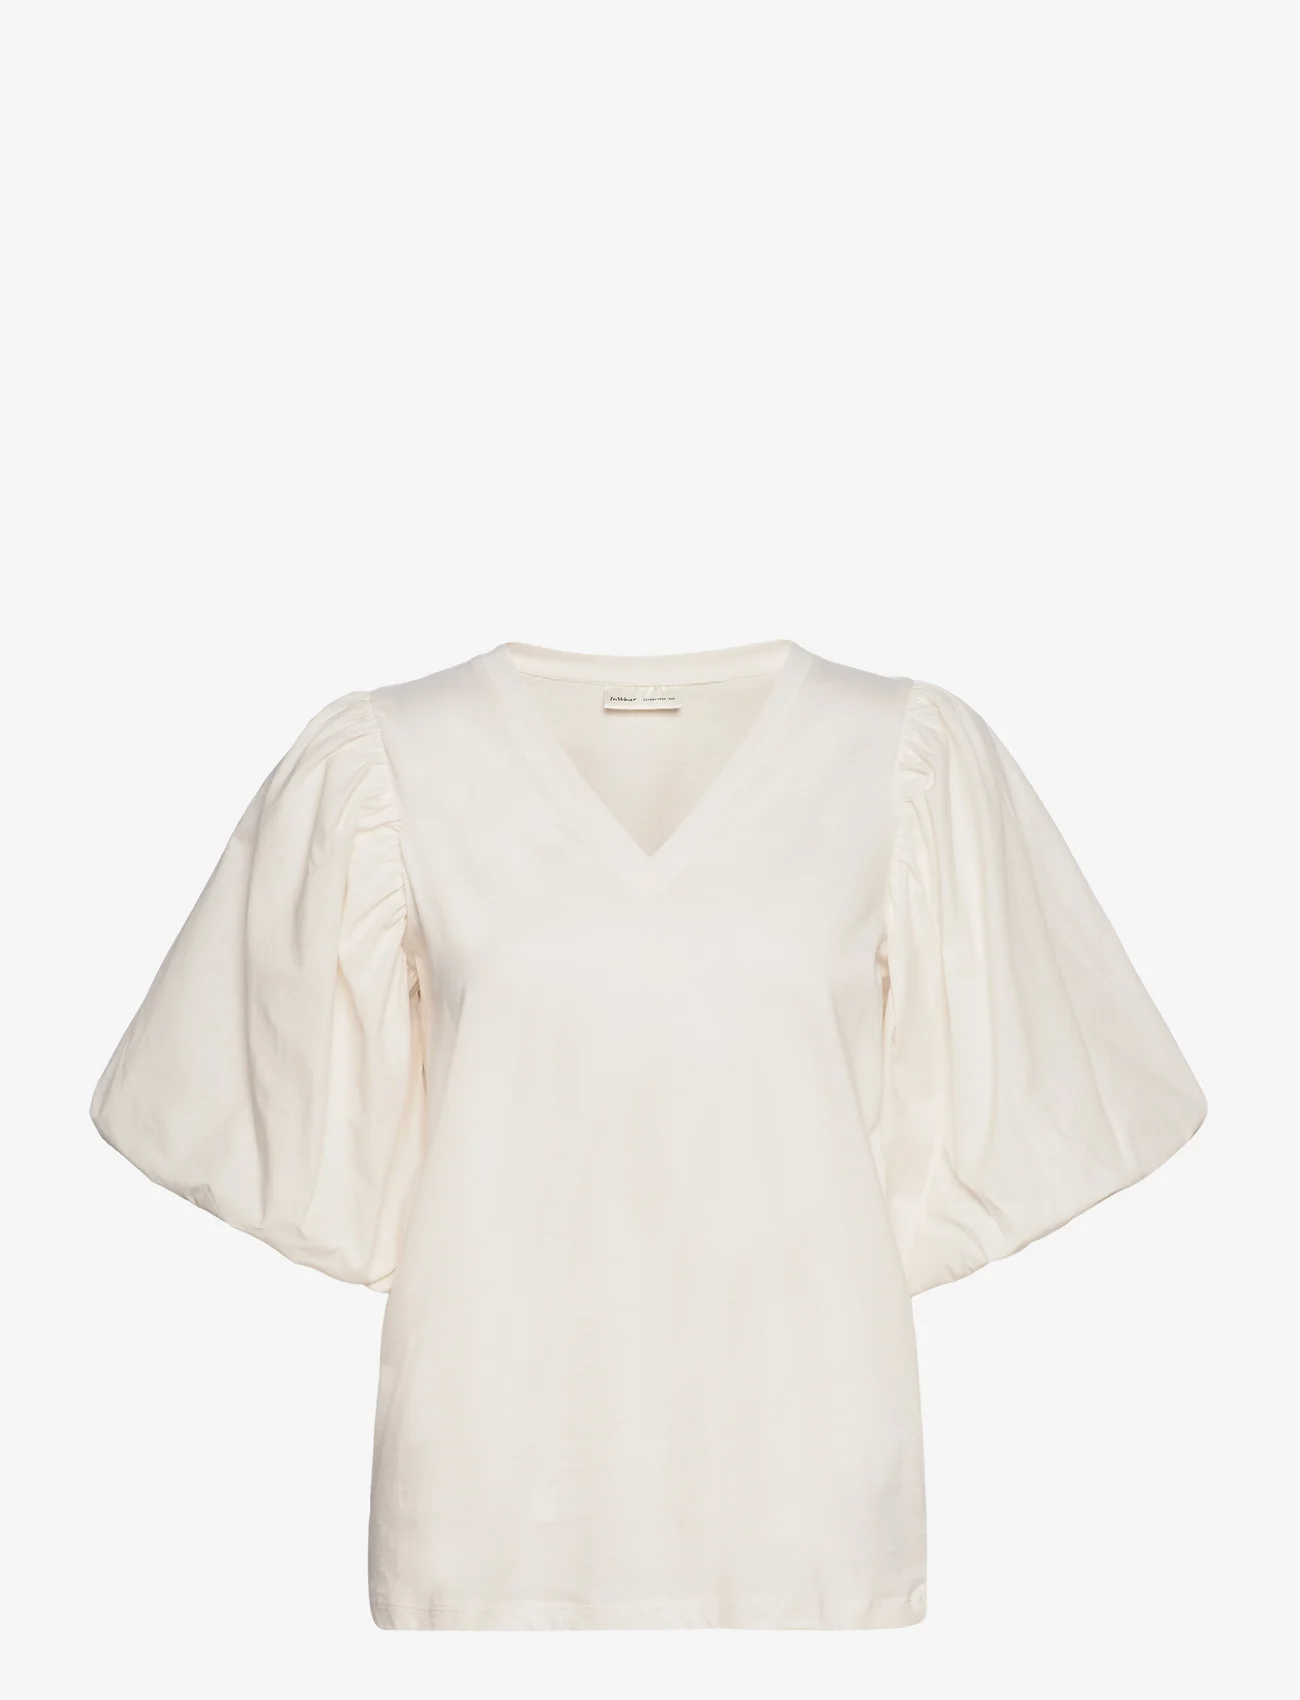 InWear - UmeIW V-neck - short-sleeved blouses - whisper white - 0